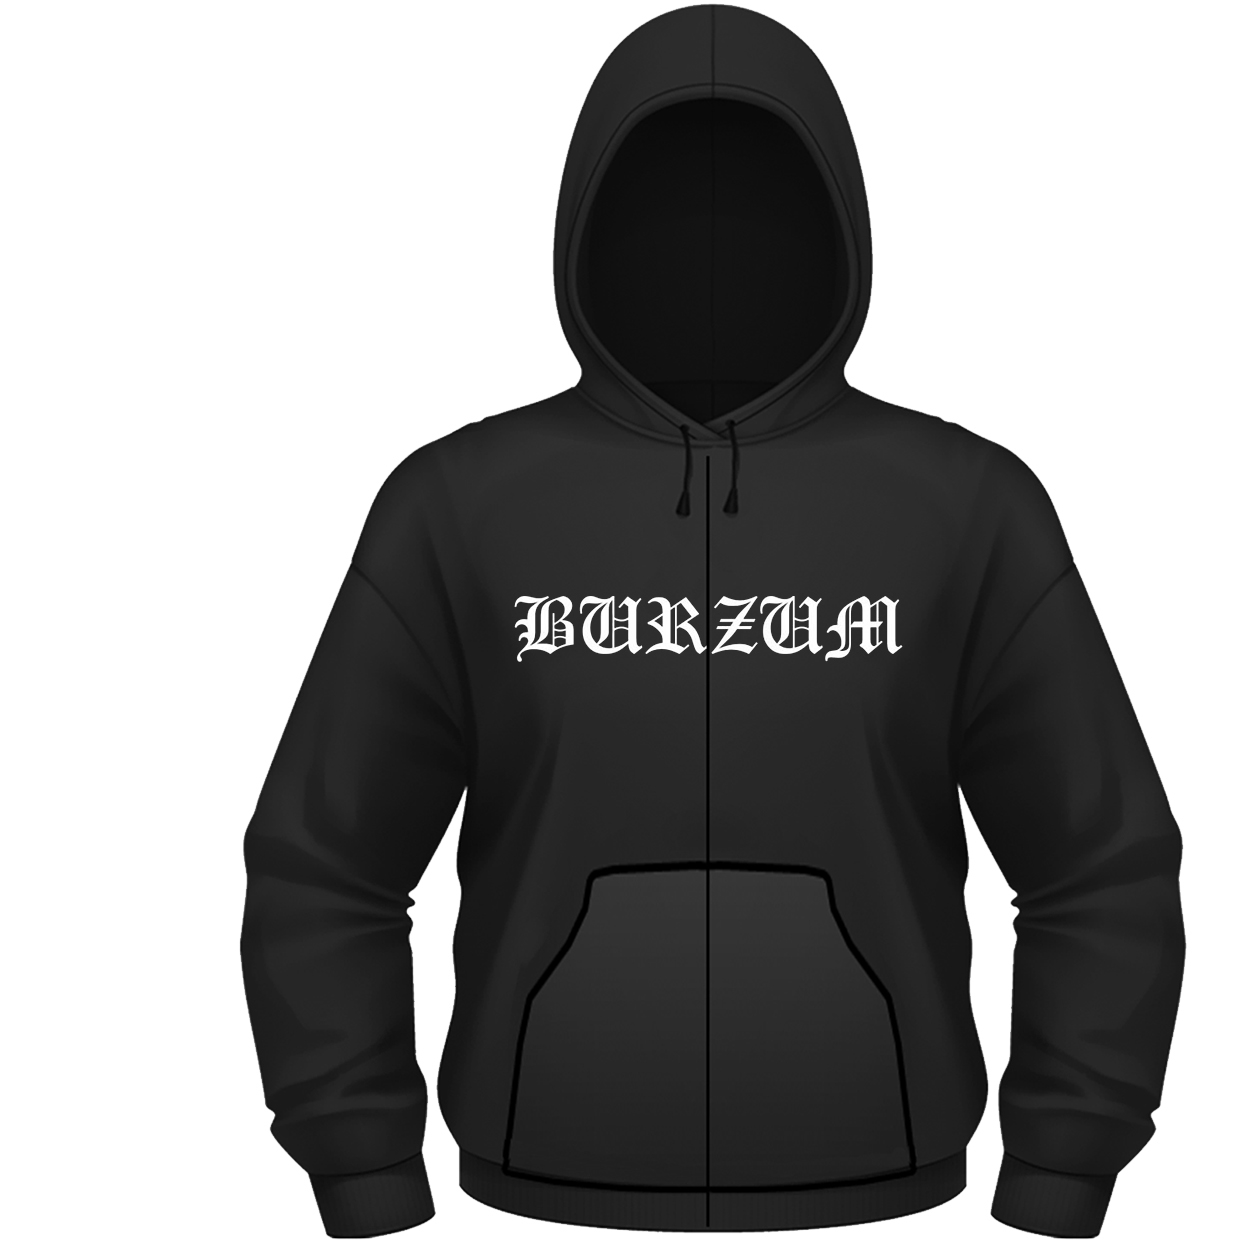 Abbigliamento Burzum: Aske (Felpa Con Cappuccio Unisex Tg. XL) NUOVO SIGILLATO, EDIZIONE DEL 30/01/2012 SUBITO DISPONIBILE